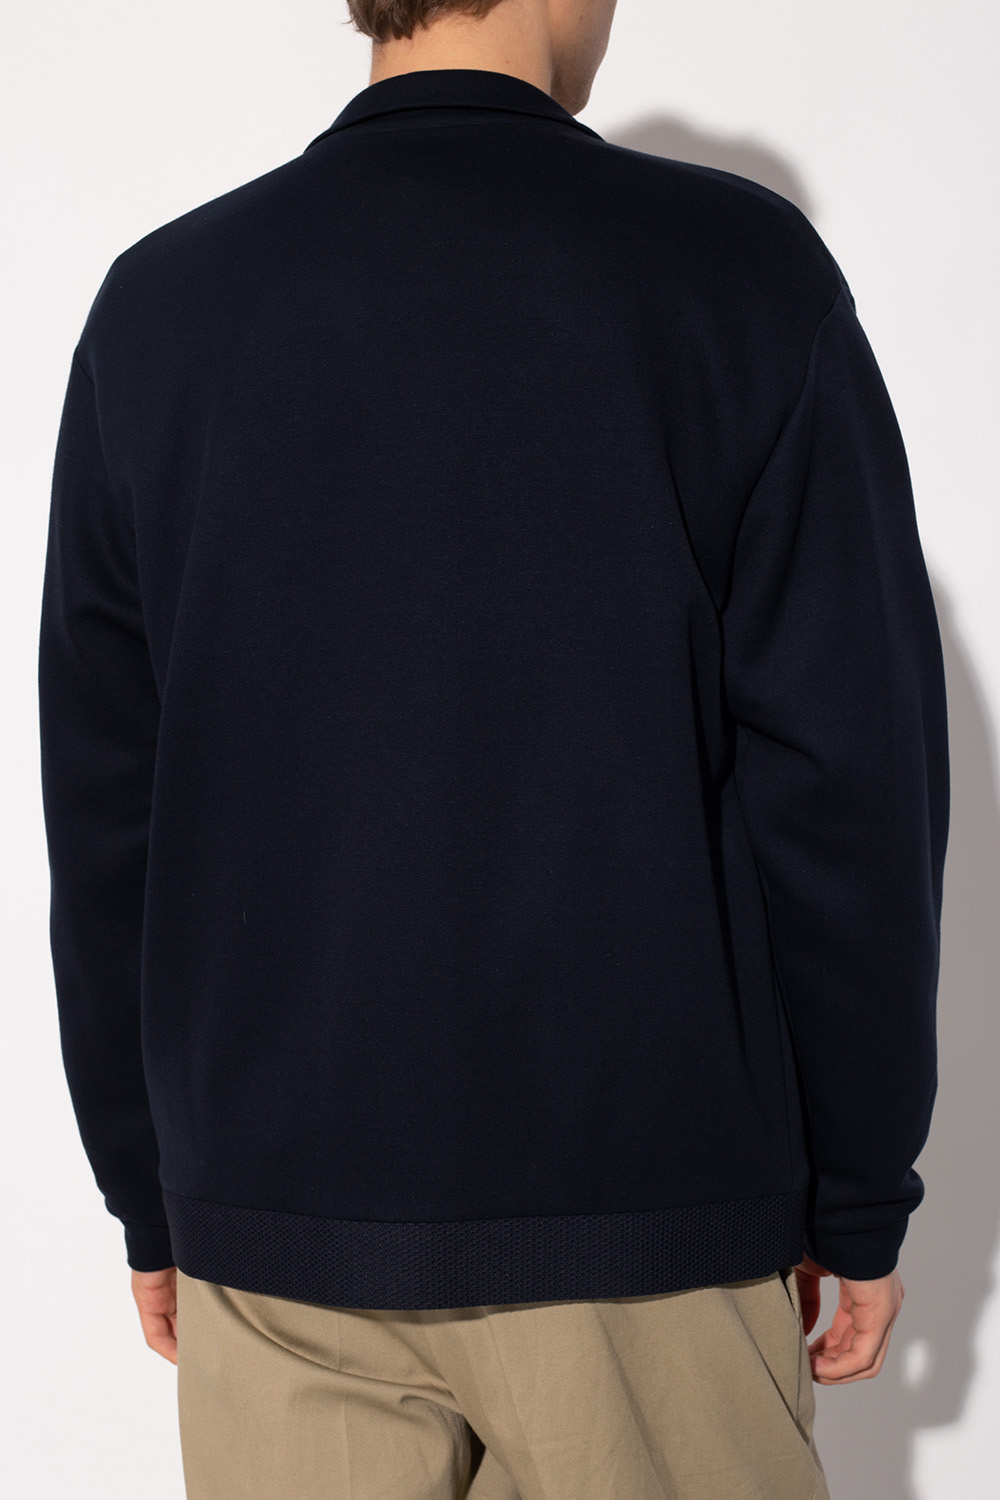 Giorgio armani T-Bar Sweatshirt with zip